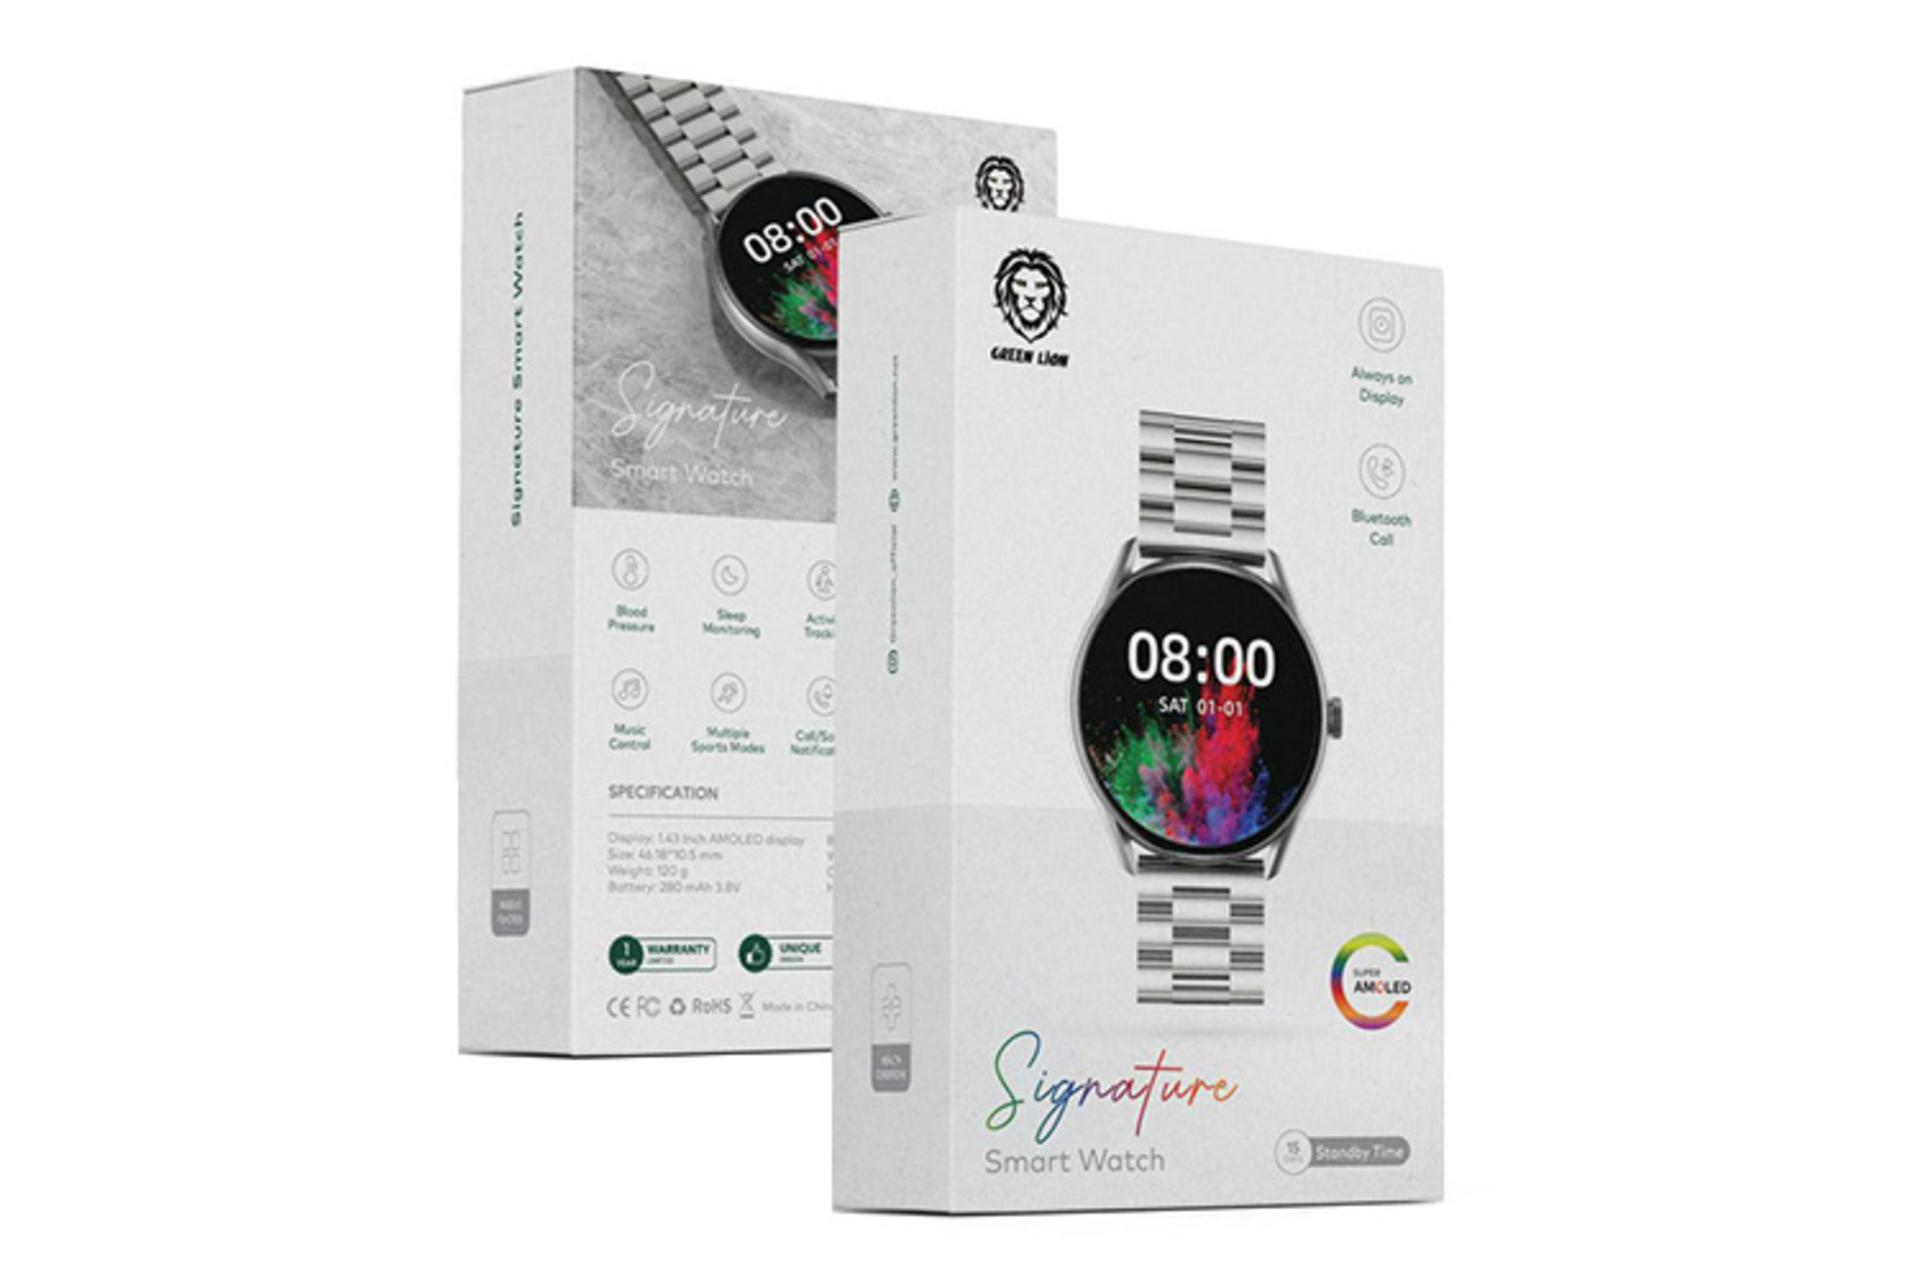 جعبه ساعت هوشمند گرین لیون Green Lion Signature